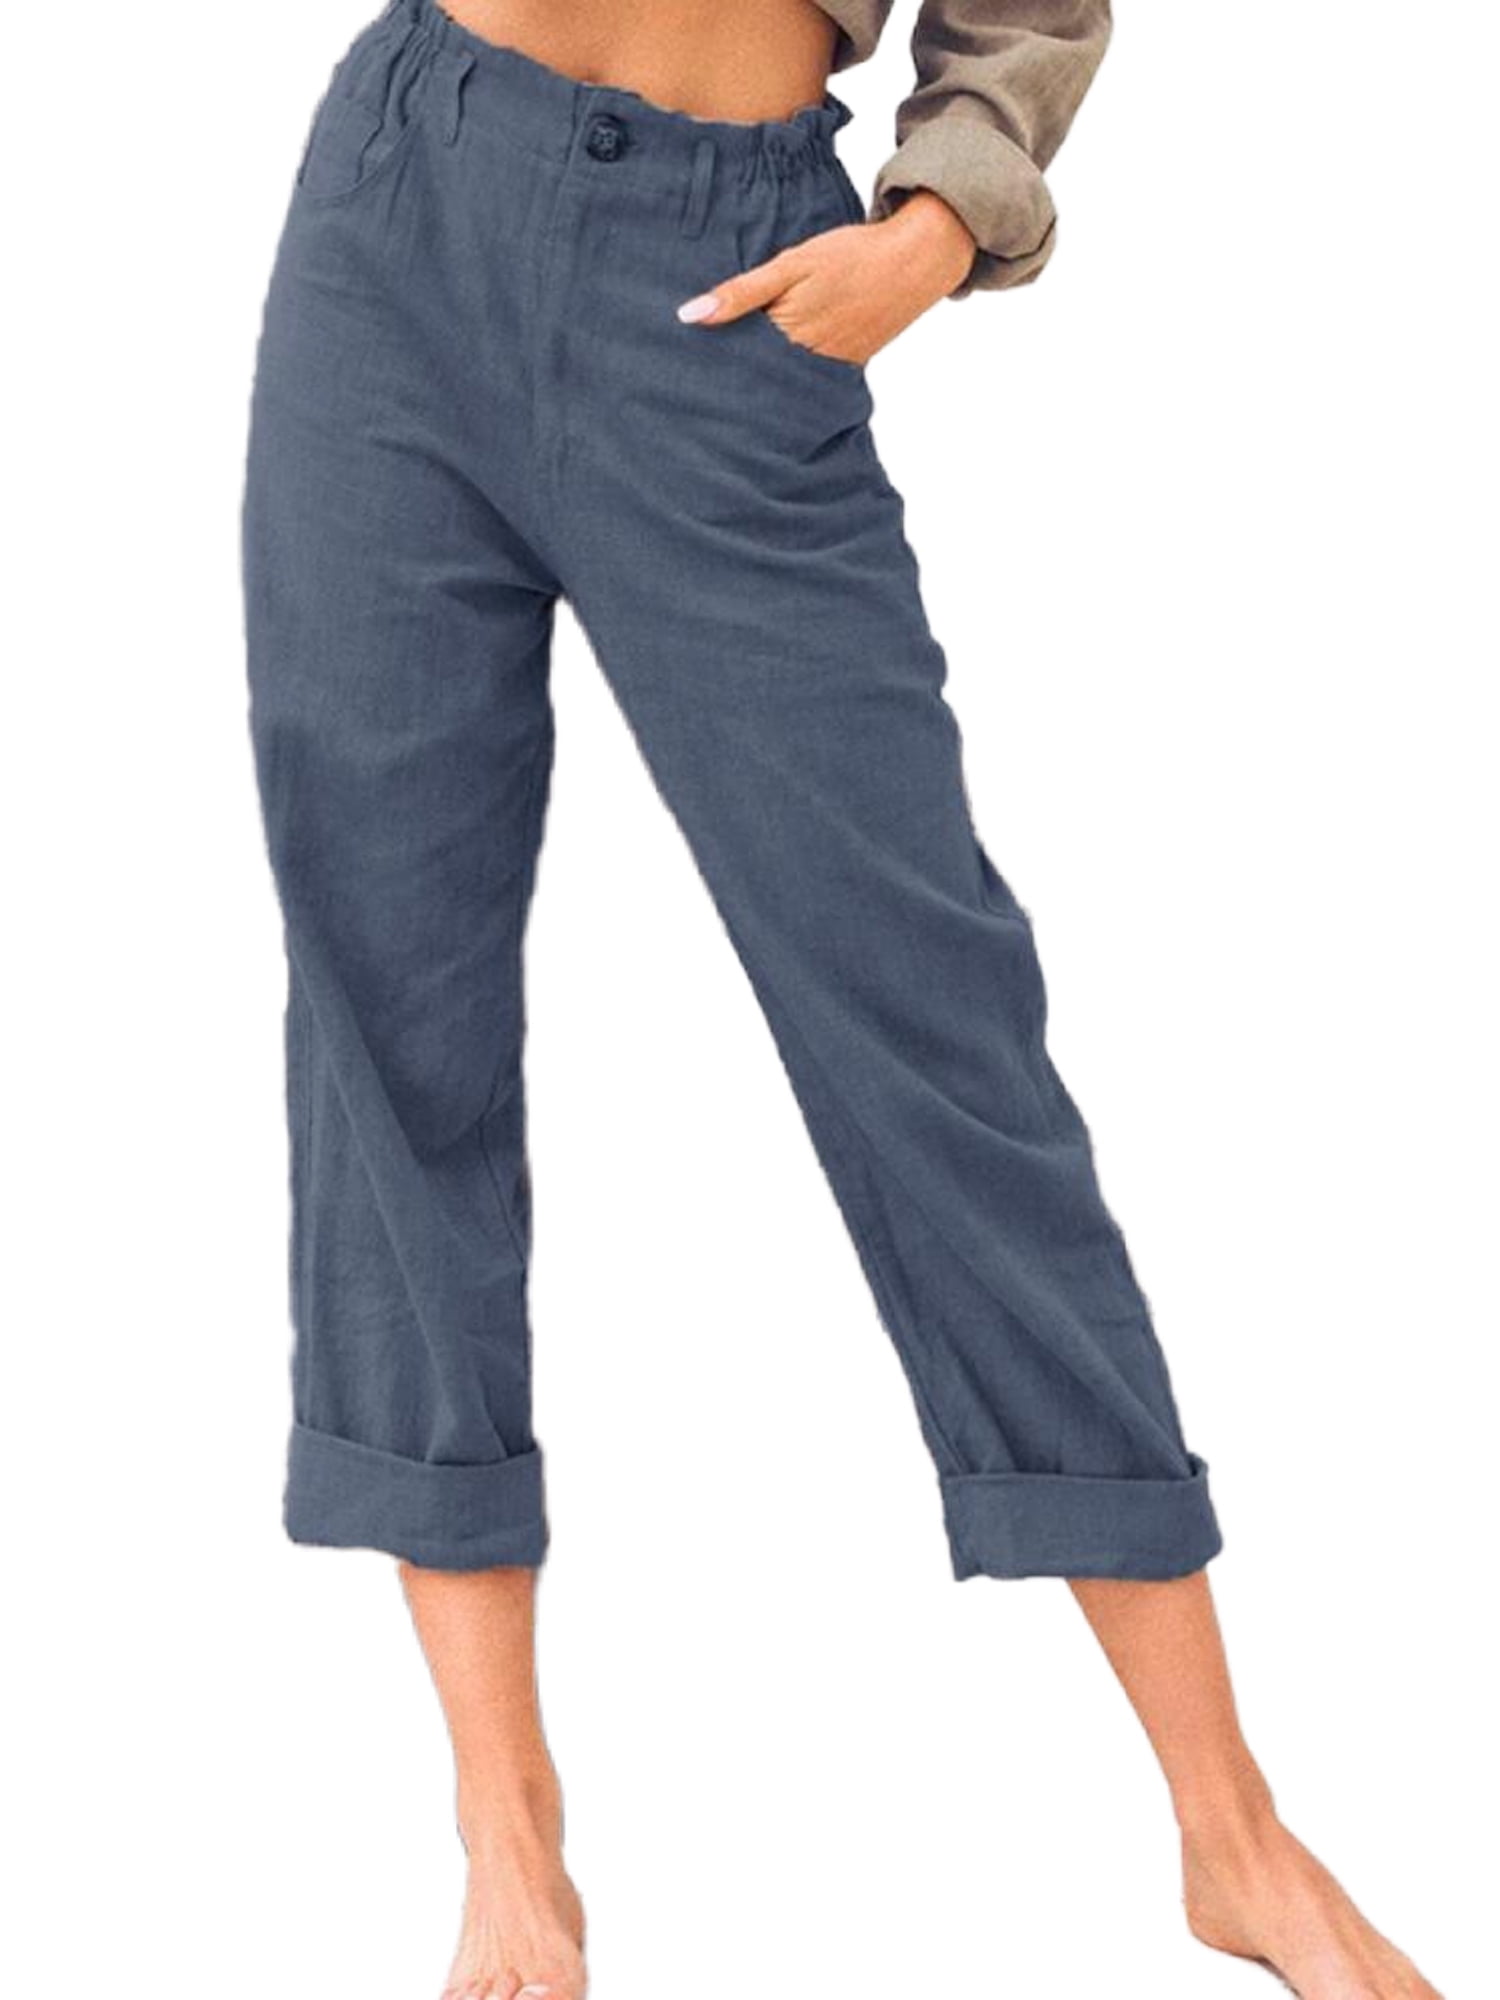 Niuer Linen Capris Pants For Women Casual High Waist Summer Pants ...